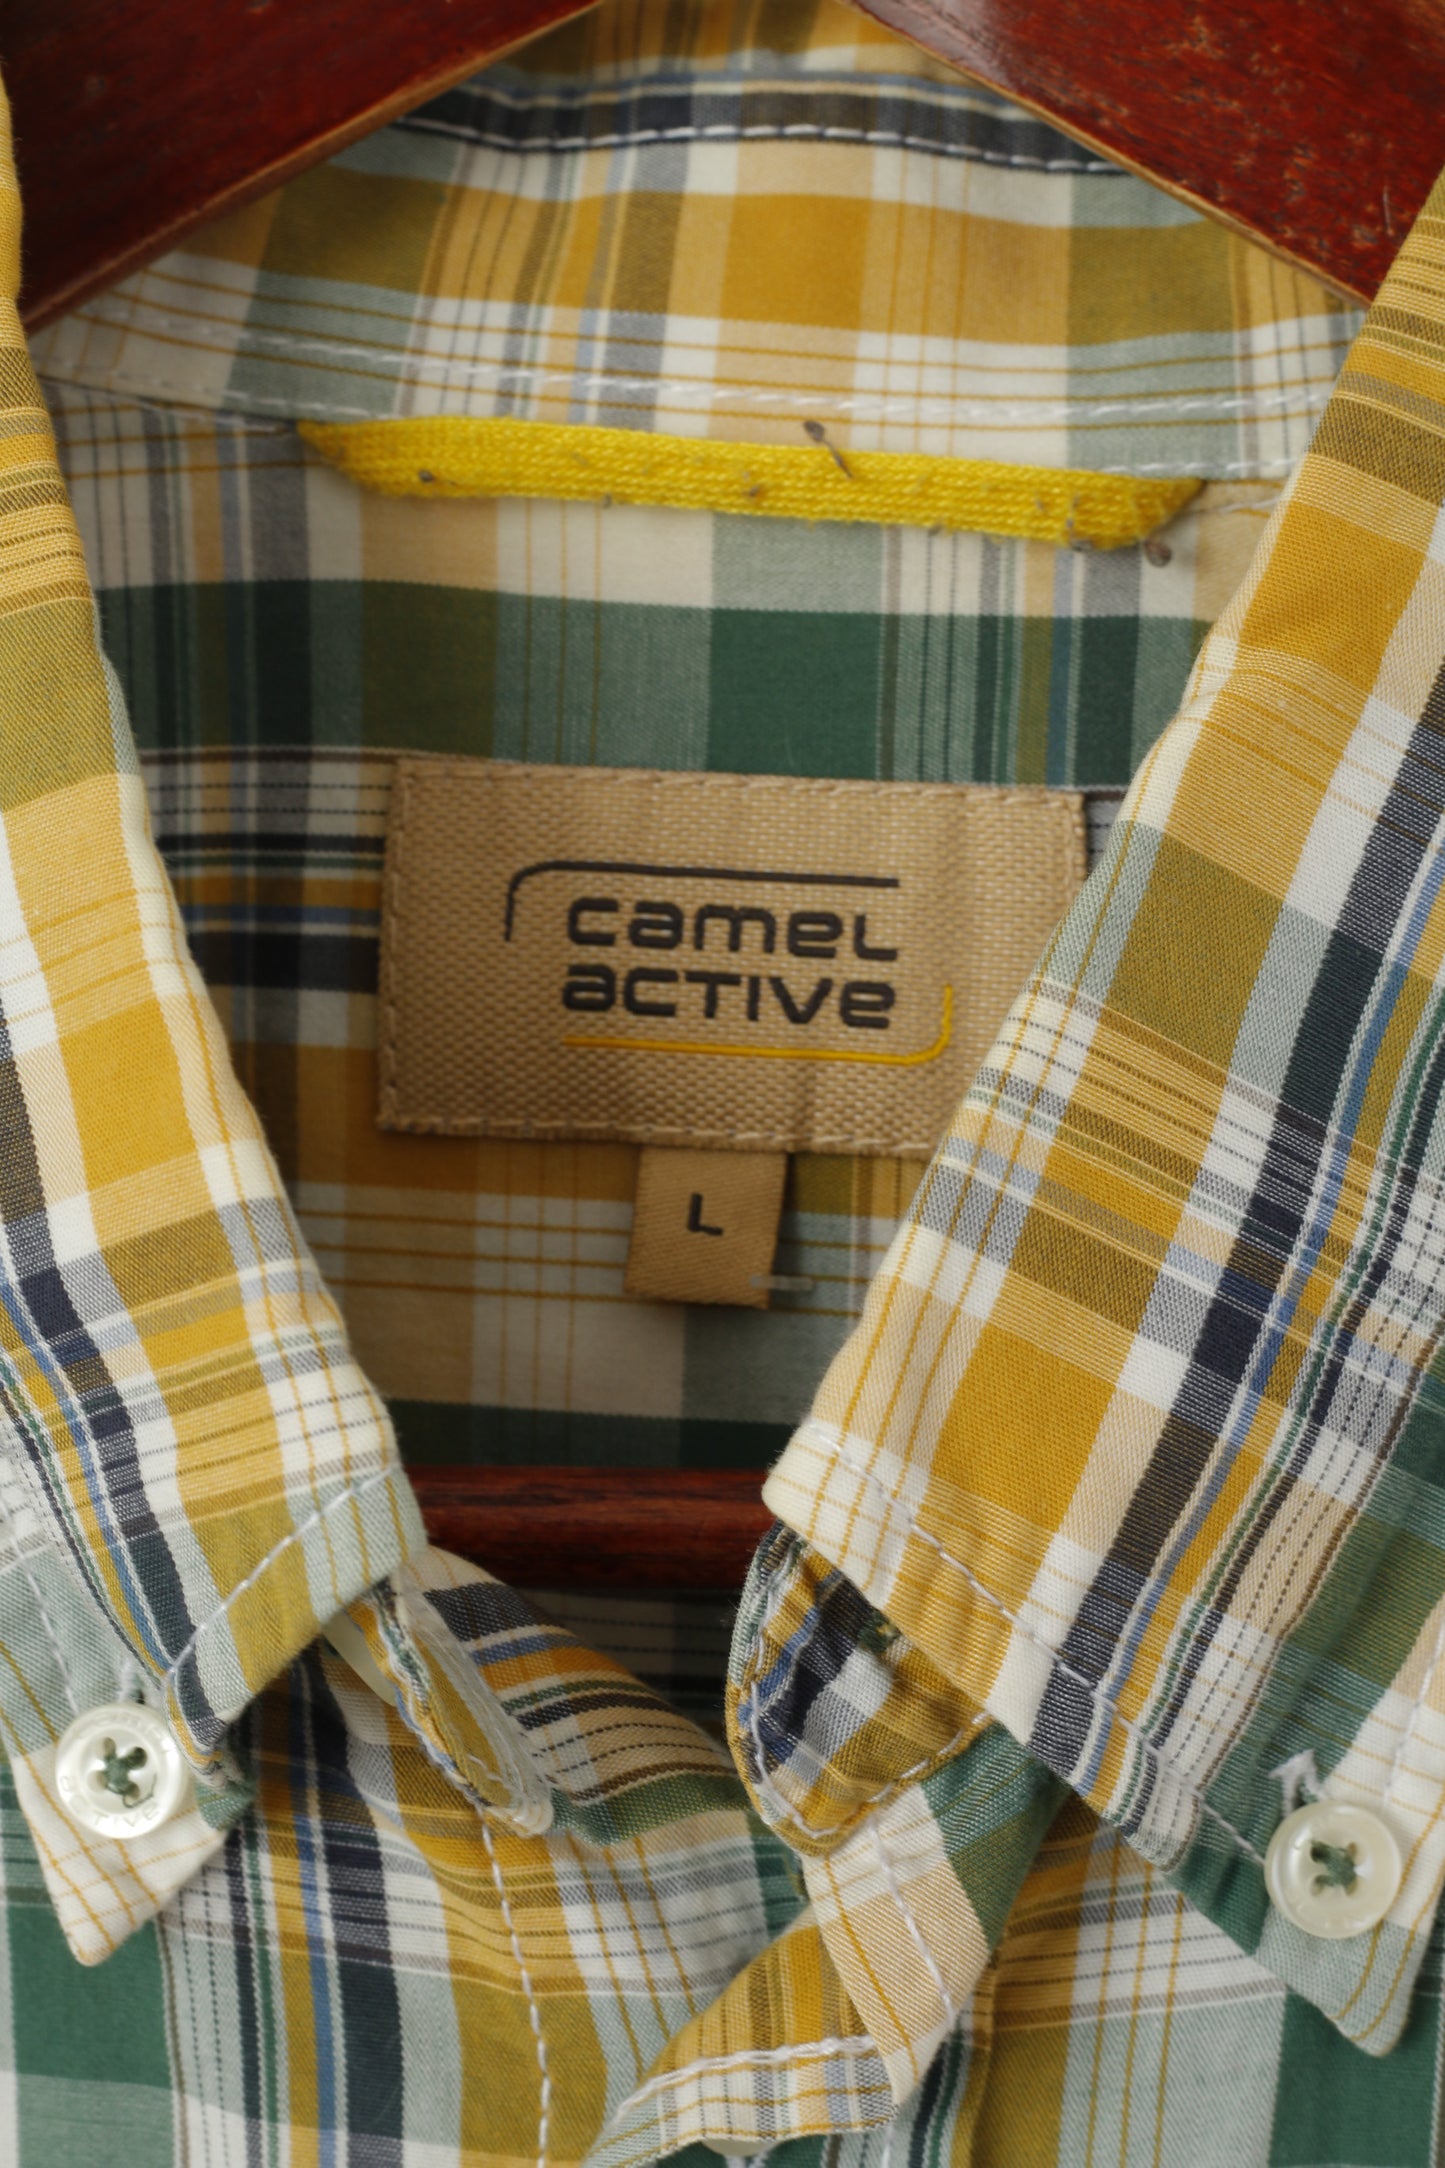 Camicia casual da uomo Camel Active L. Top con colletto abbottonato a maniche corte a quadri gialli